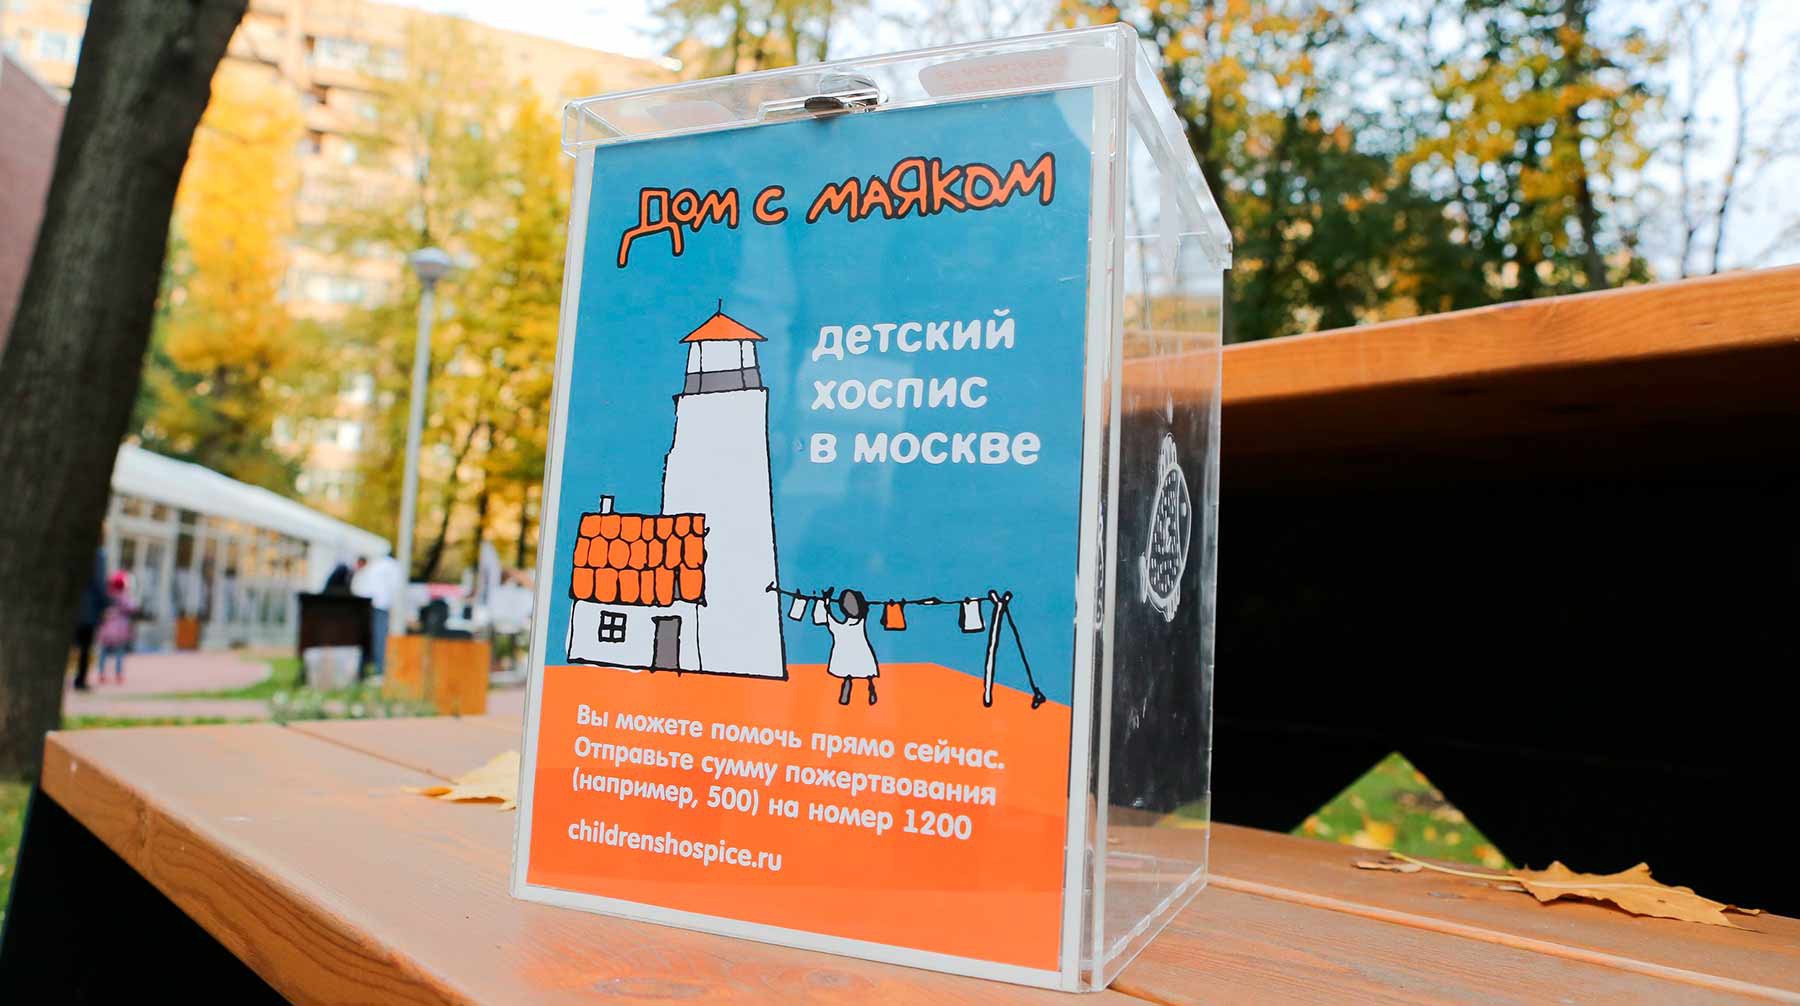 Dailystorm - Детский хоспис «Дом с маяком» оштрафовали на 200 тысяч рублей